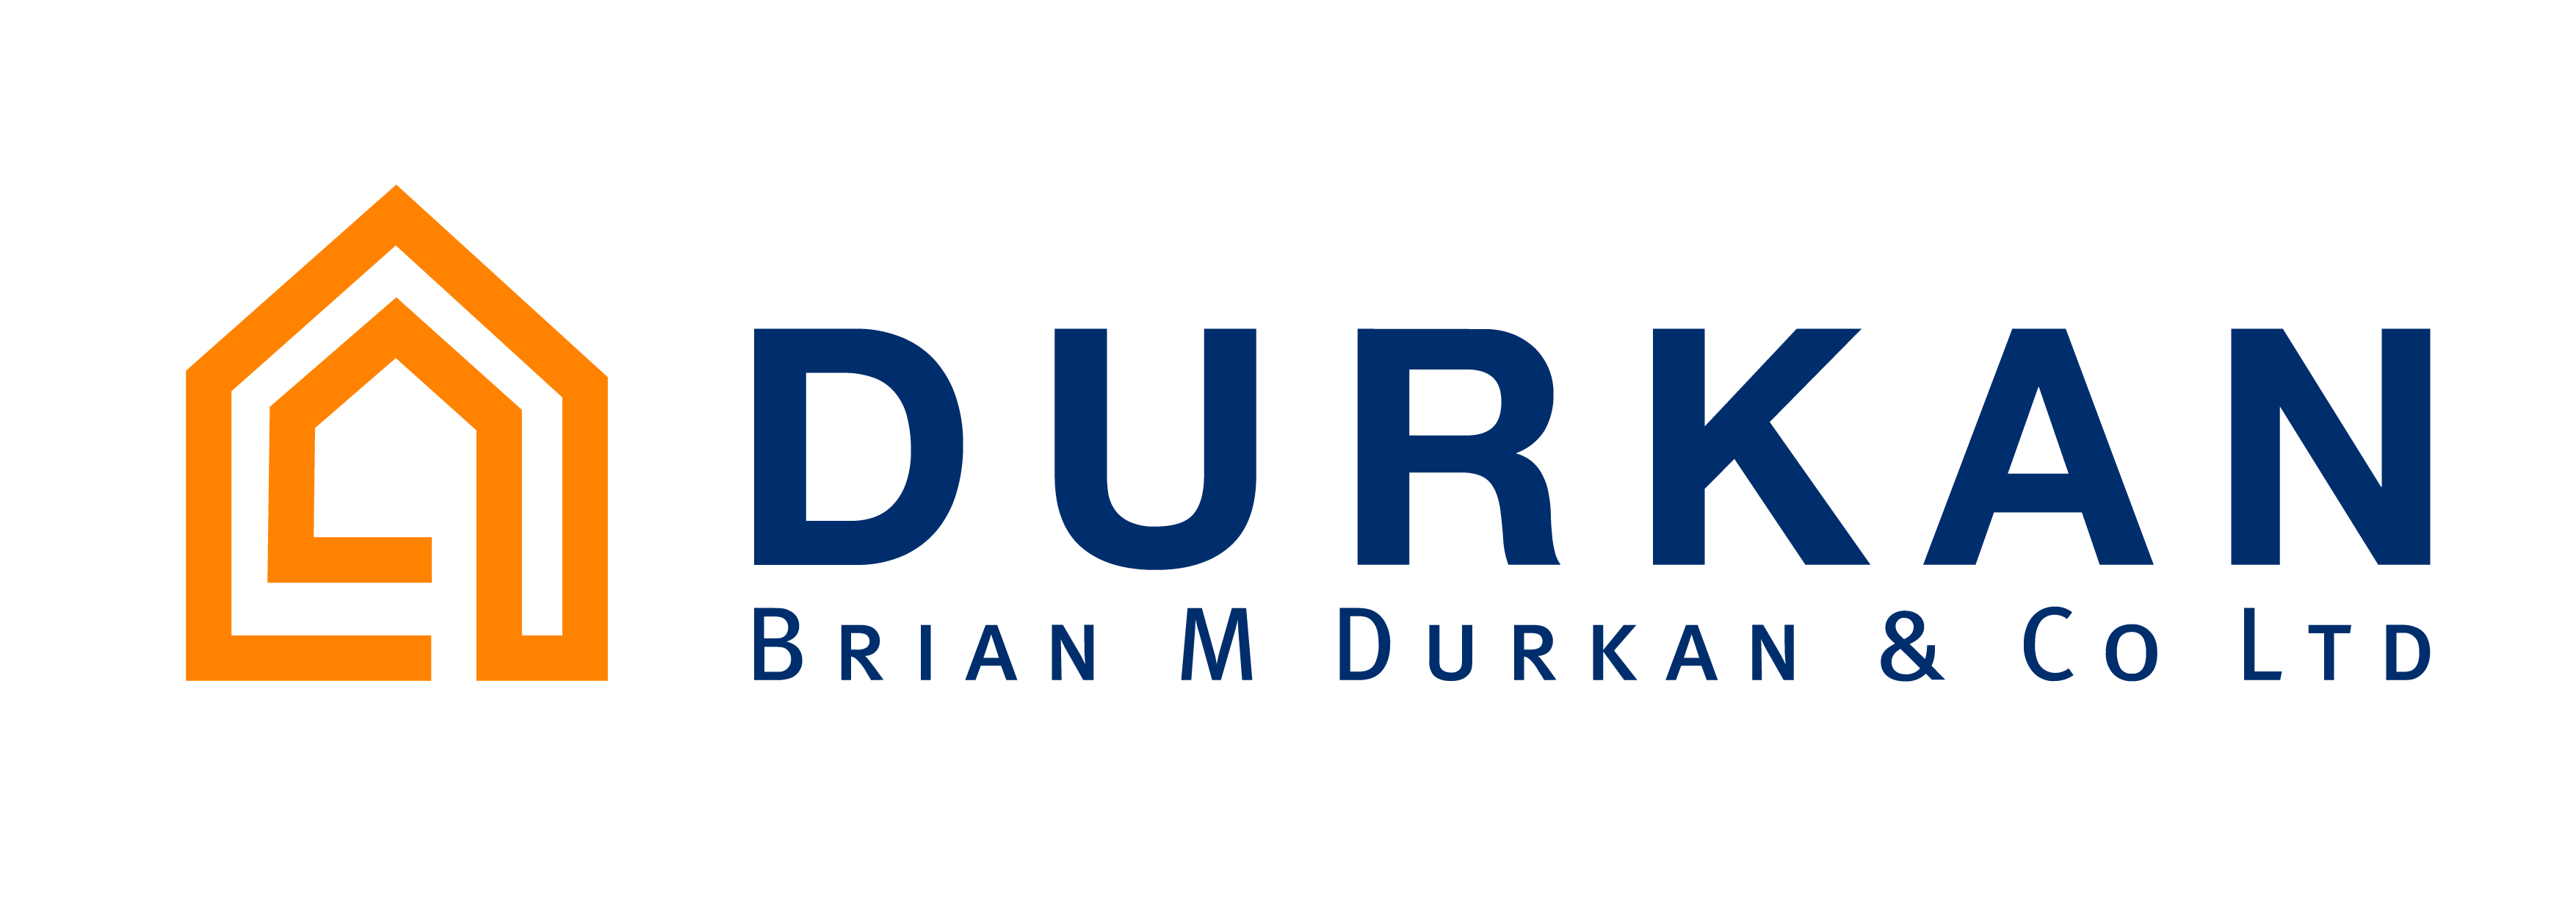 Brian M Durkan & Co. Ltd.